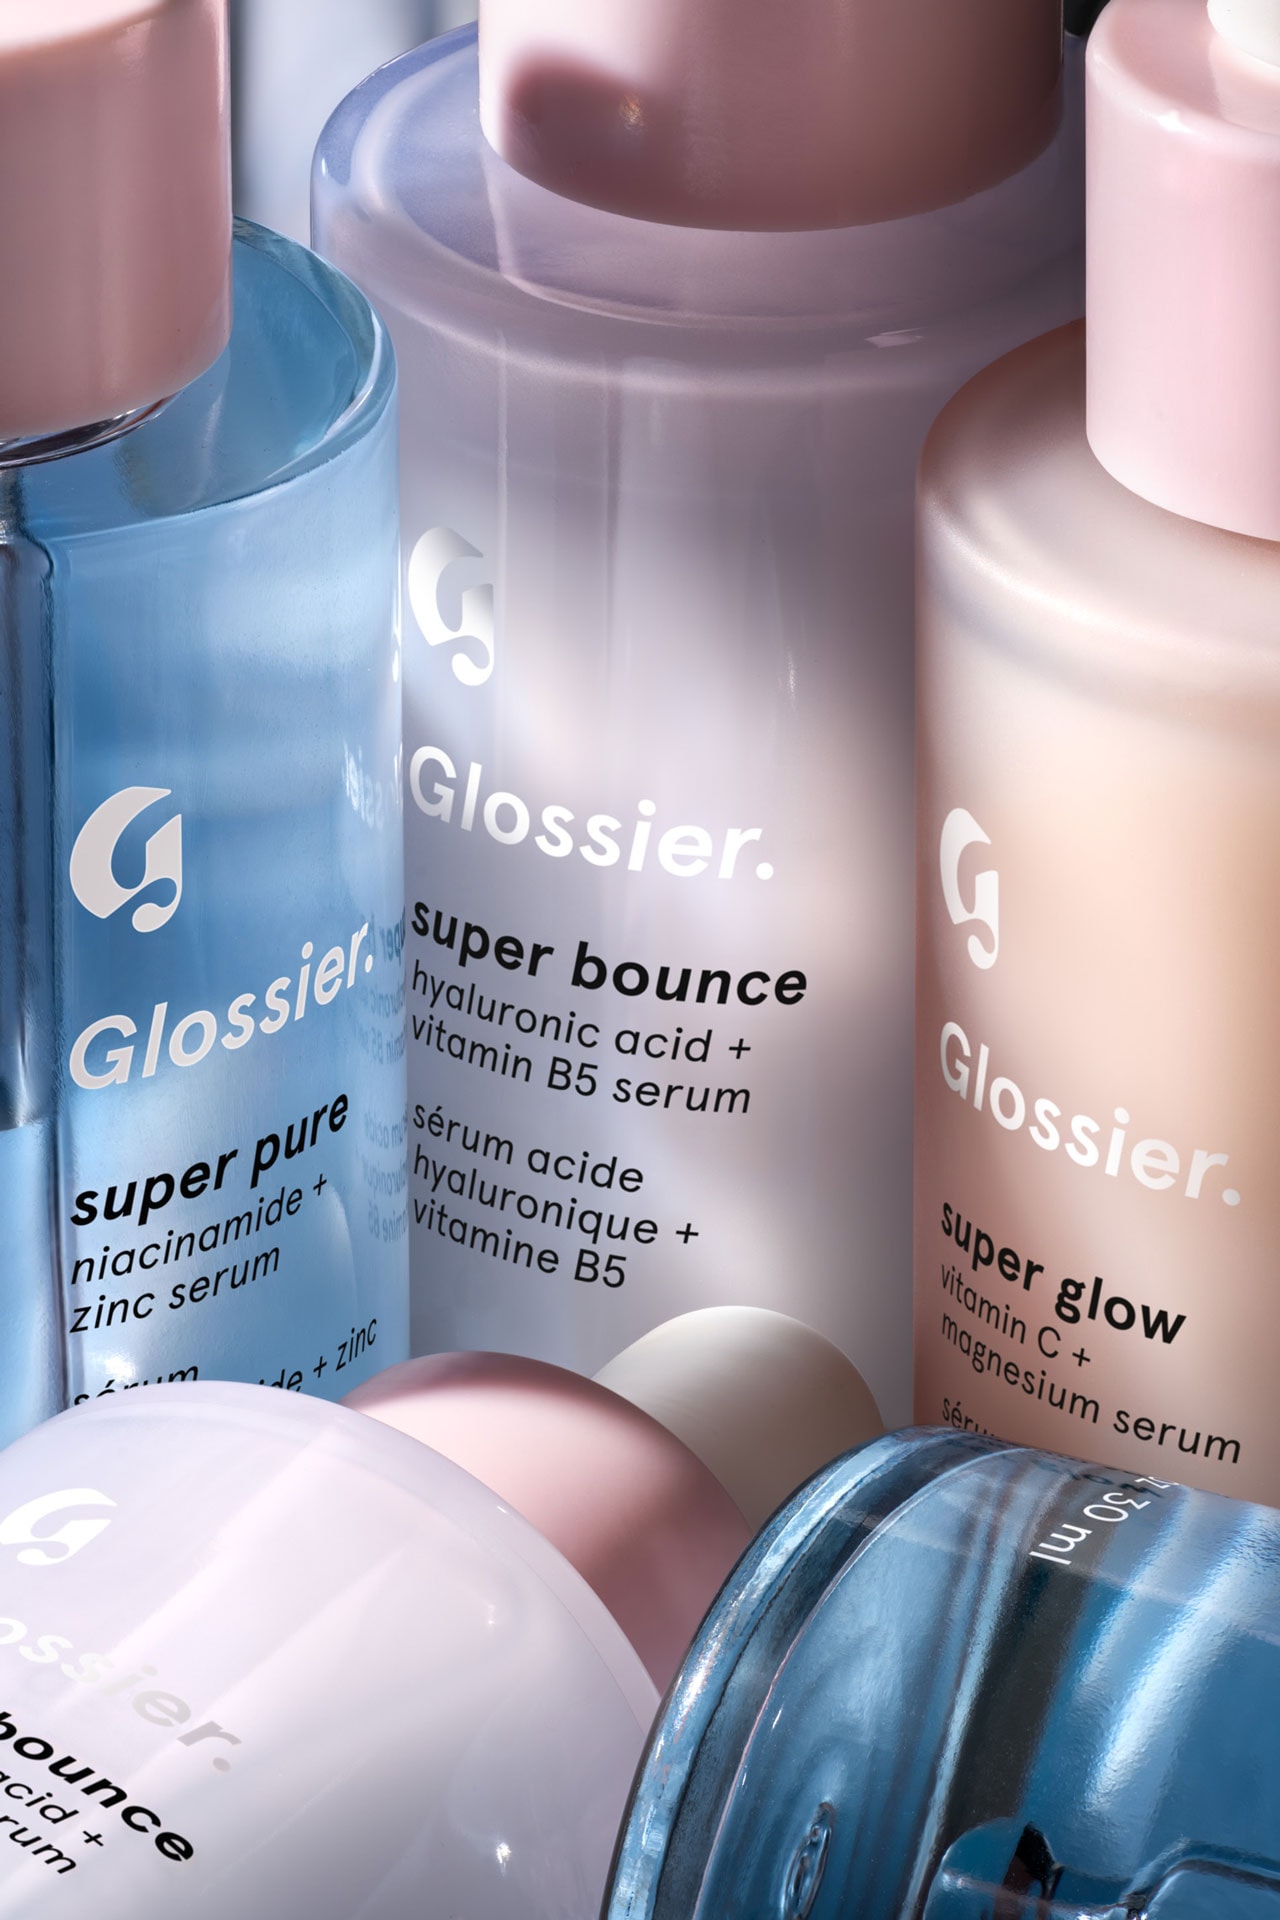 Glossier Super Pure Serum